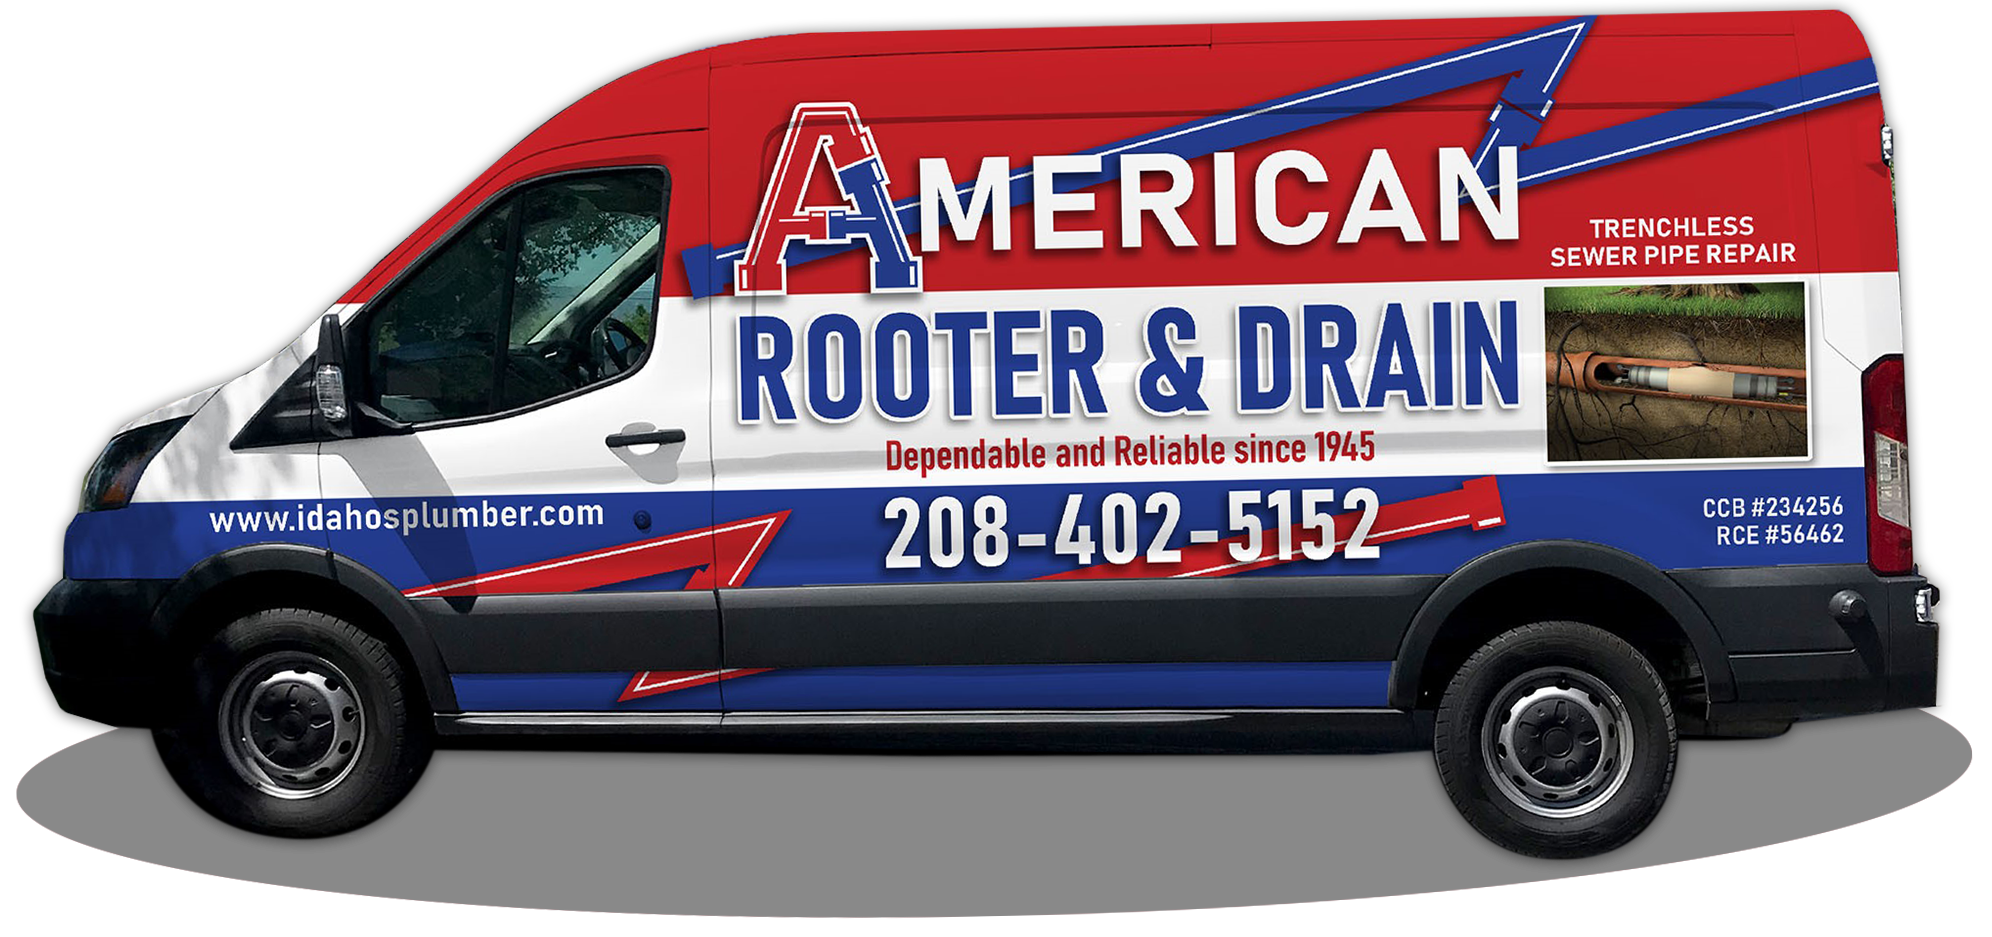 American Rooter & Drain branded van